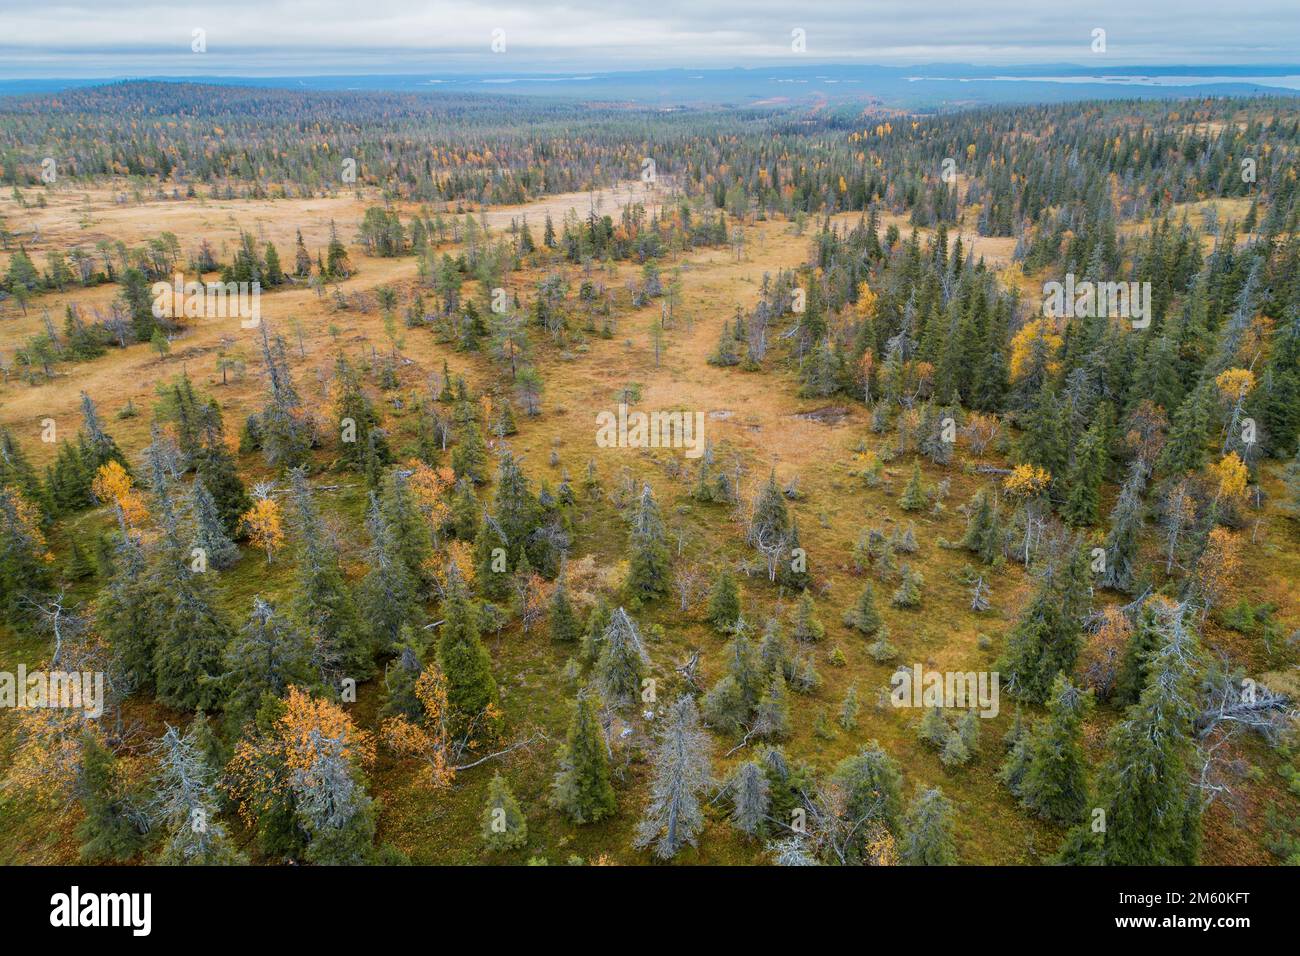 Un gros plan de forêts de mérres et de conifères en pente dans le parc national de Riisitunturi, dans le nord de la Finlande Banque D'Images